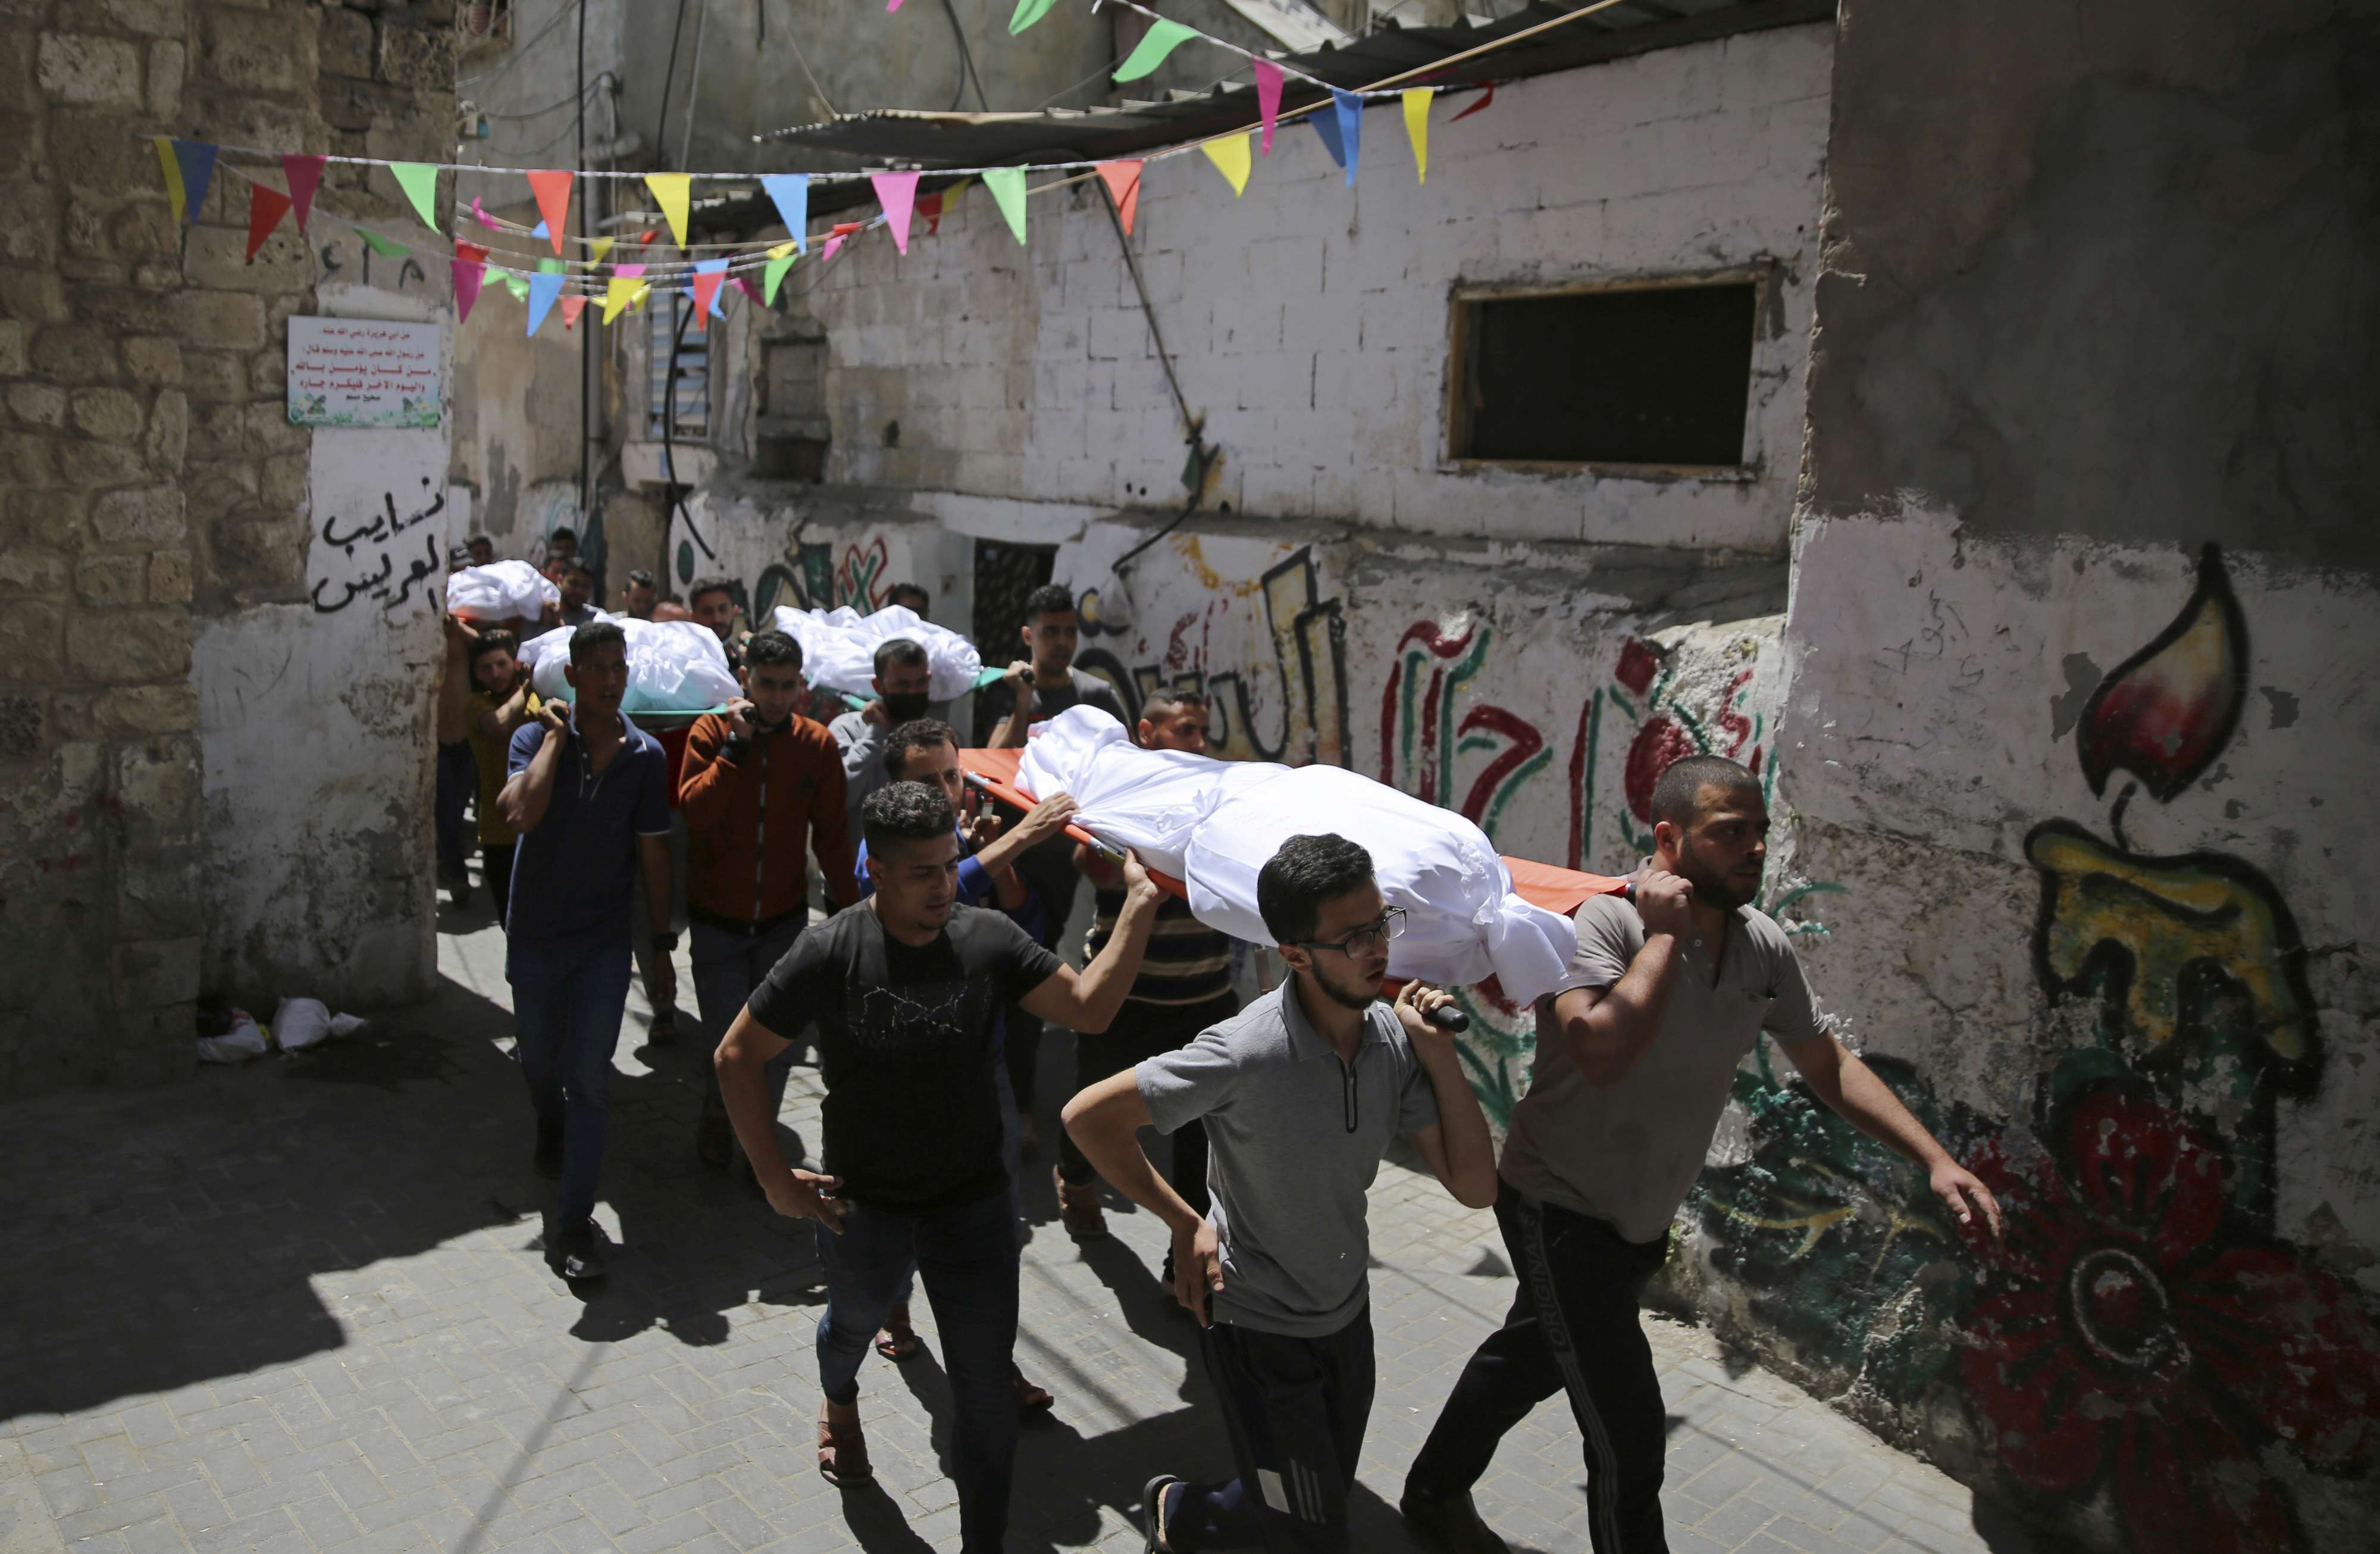 ارتفاع عدد الضحايا الفلسطينيين إلى 188 قتيلا وأكثر من 1200 جريح